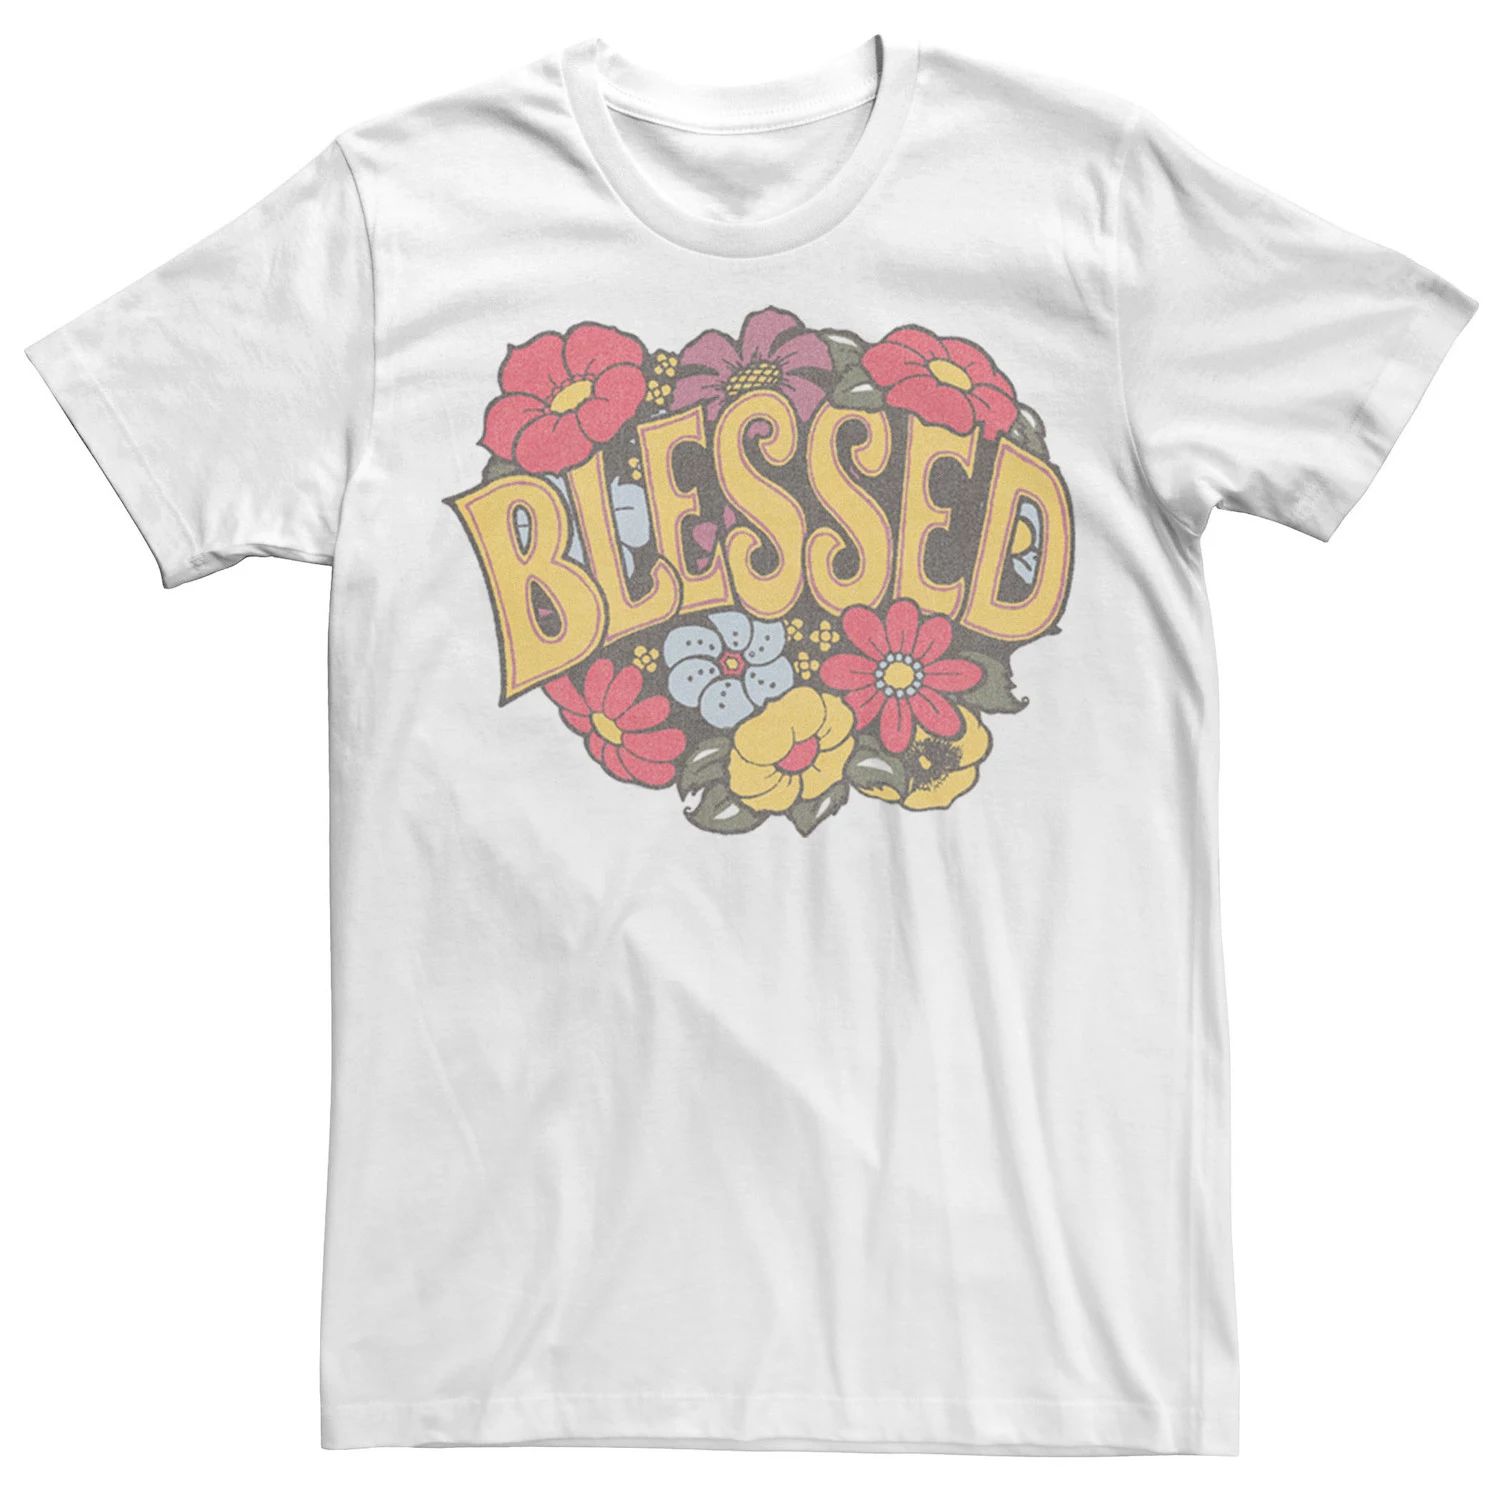 Мужская футболка с цветочным венком Blessed, White Licensed Character, белый мужская футболка зайка с цветочным венком xl белый